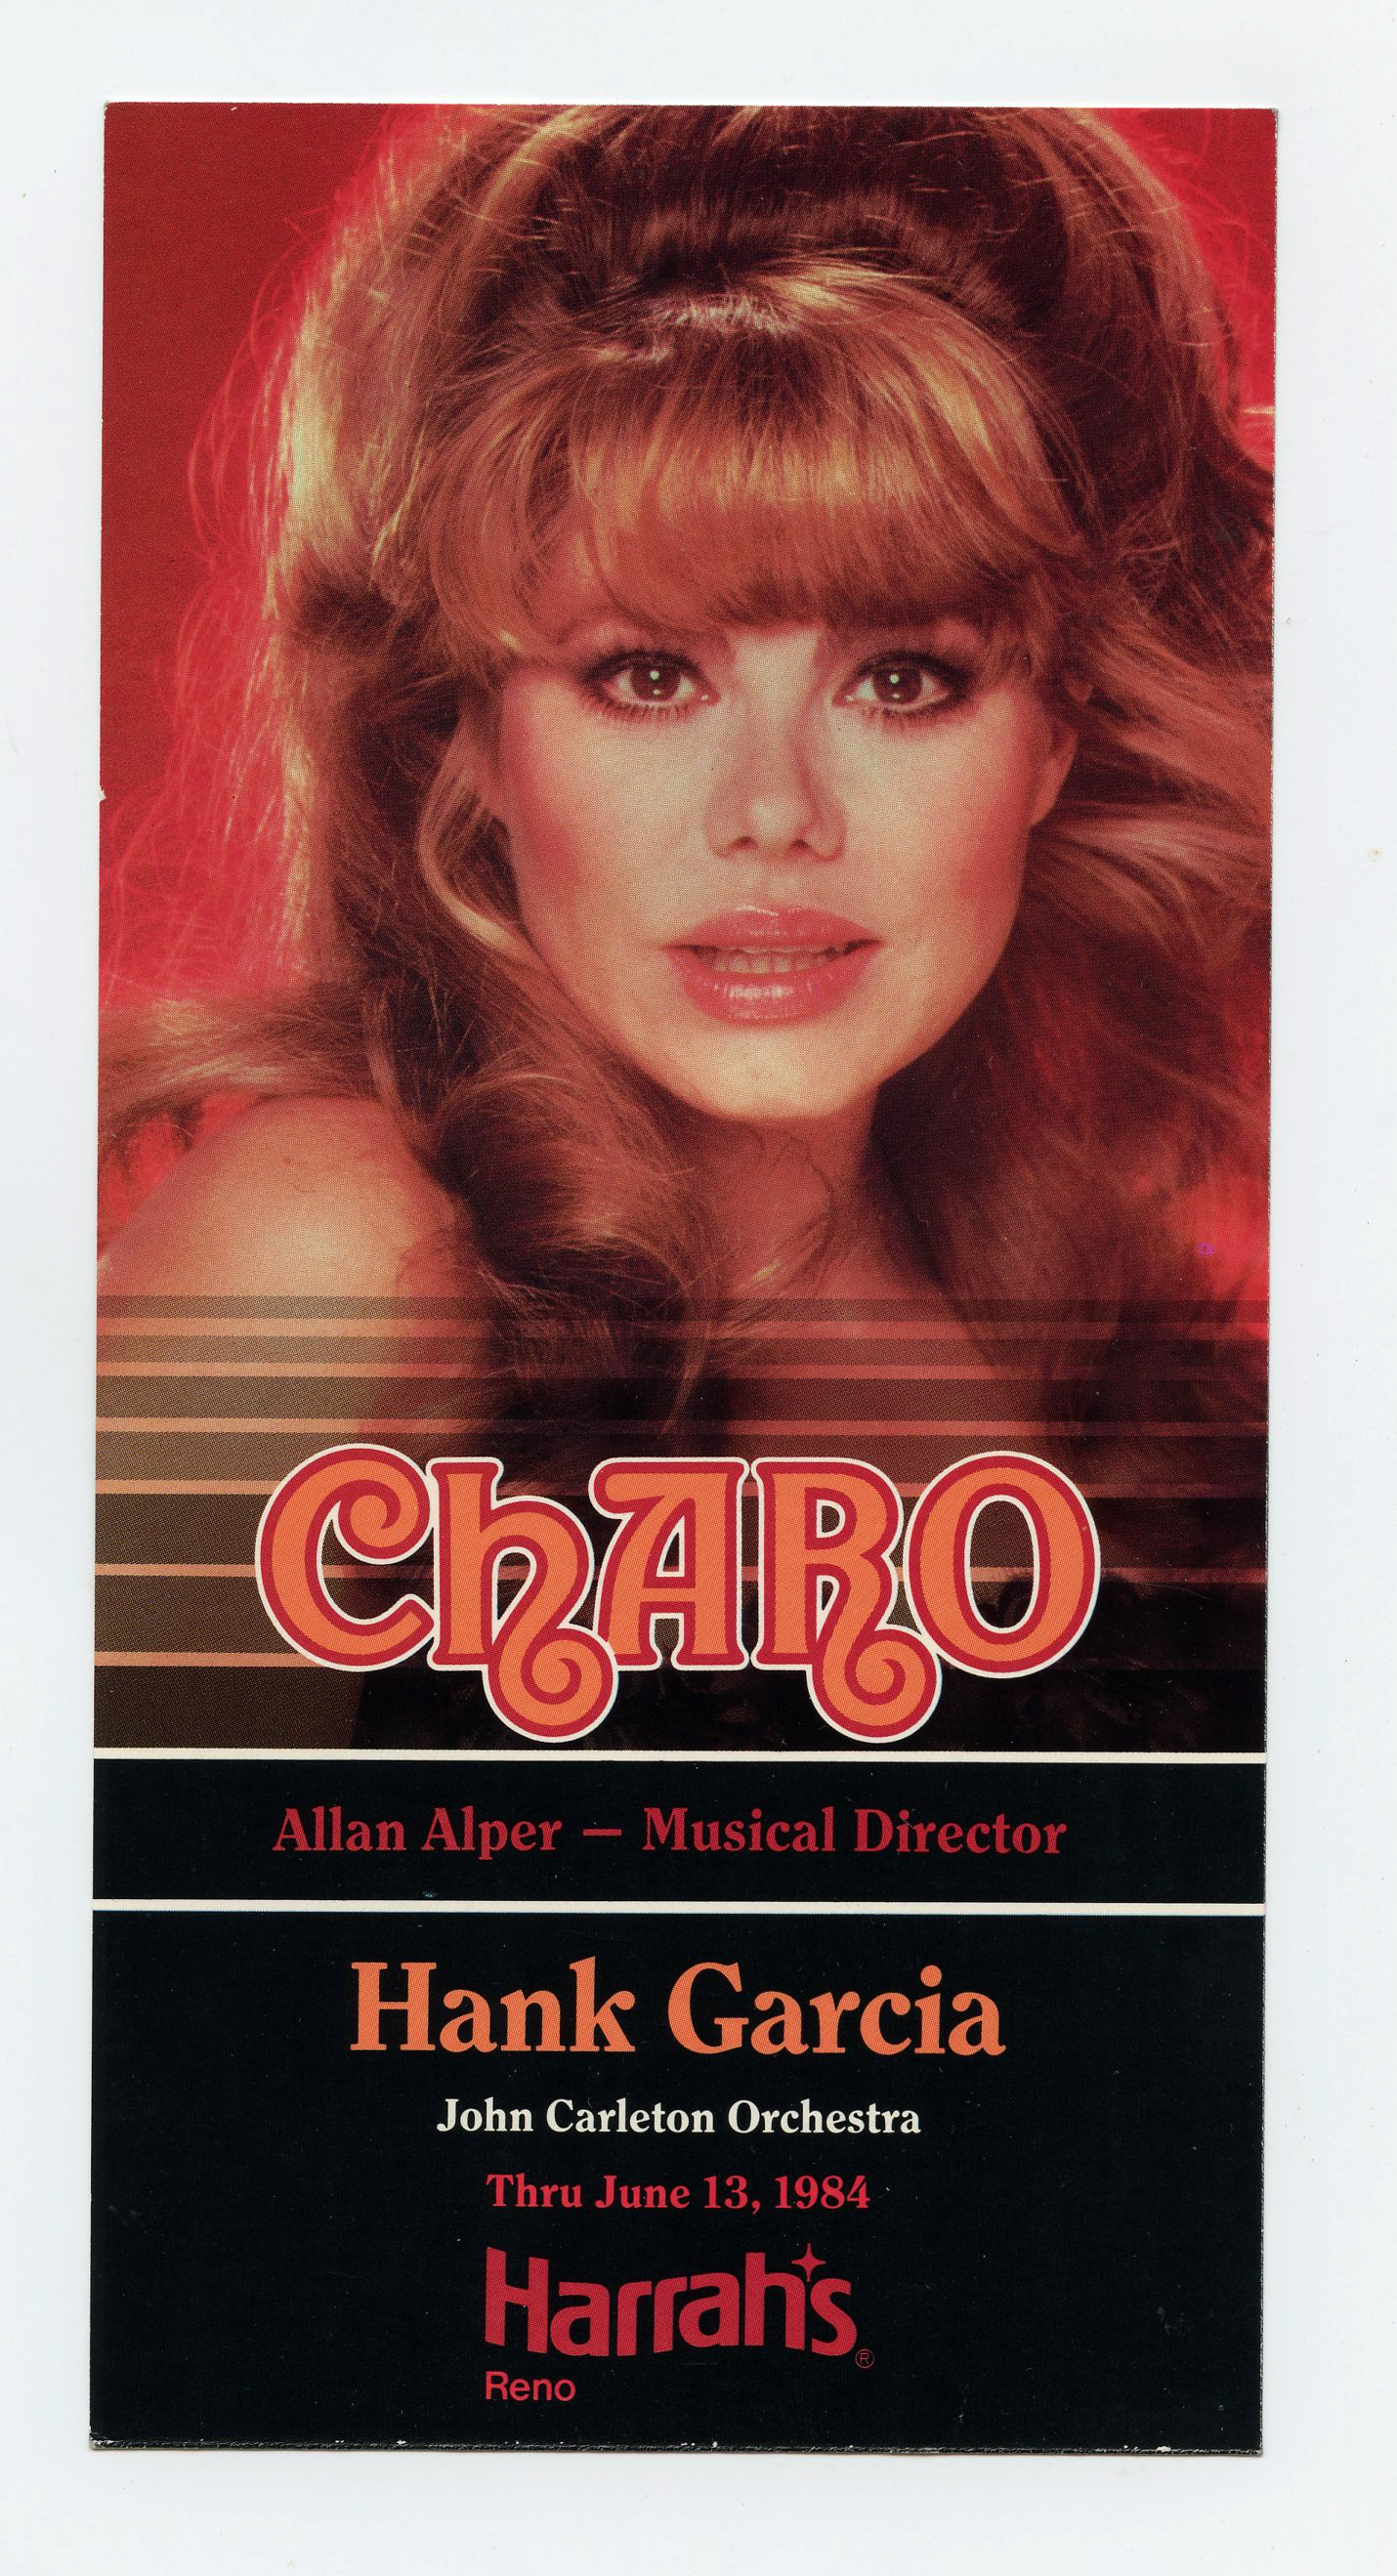 Charo Postcard 1984 Jun 13 Harrah's Reno